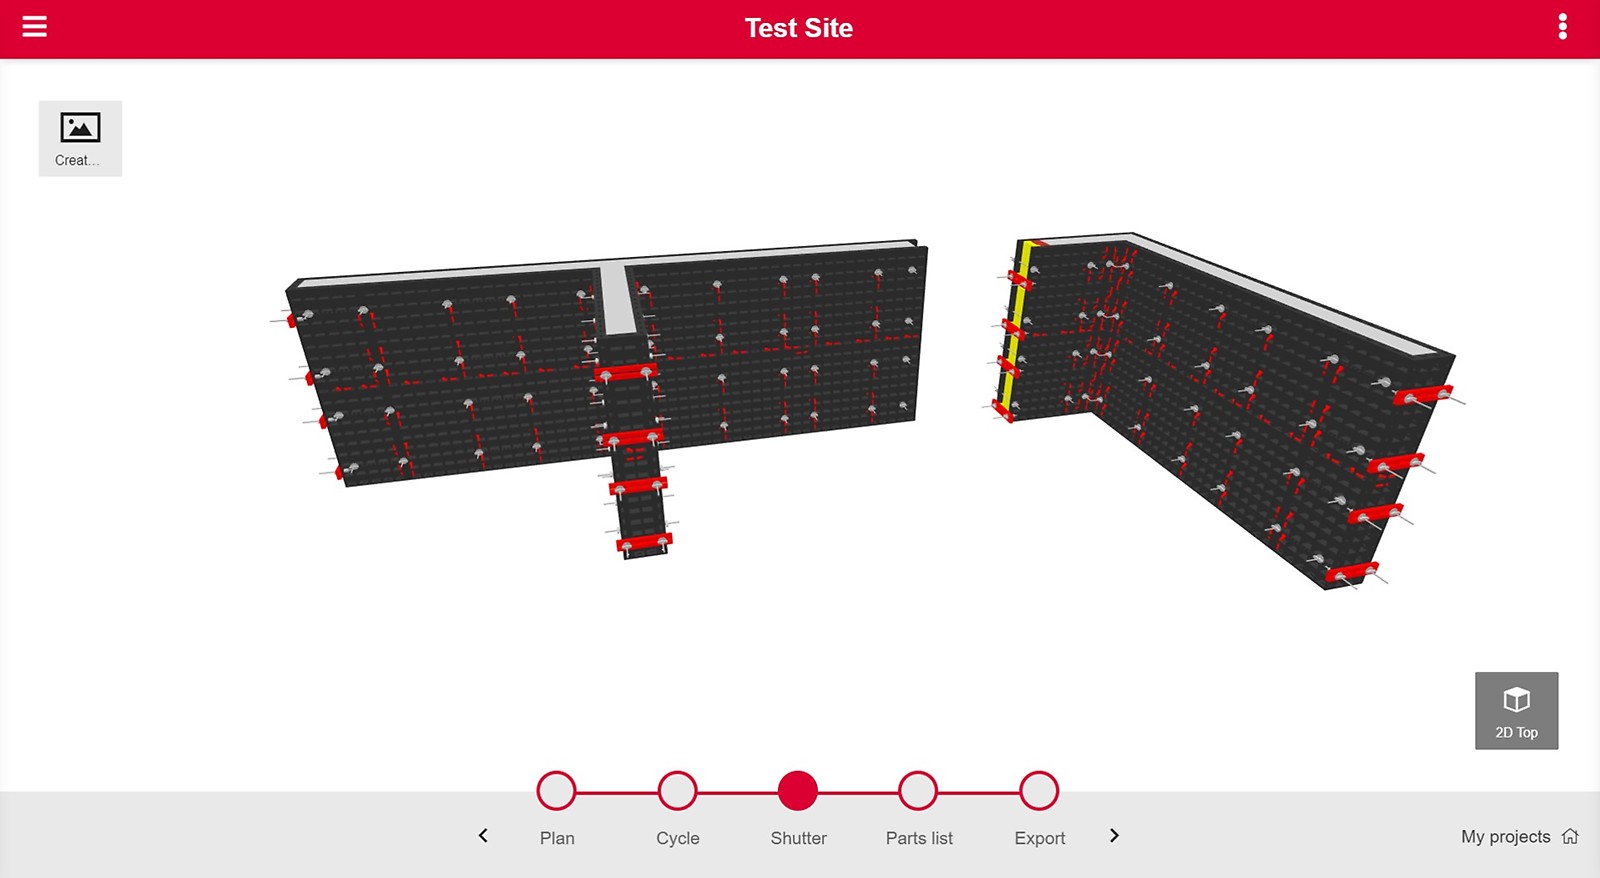 PERI QuickSolve - DUO Planner - Stap 3 'shutter': Je krijgt een 3D-weergave van je project.